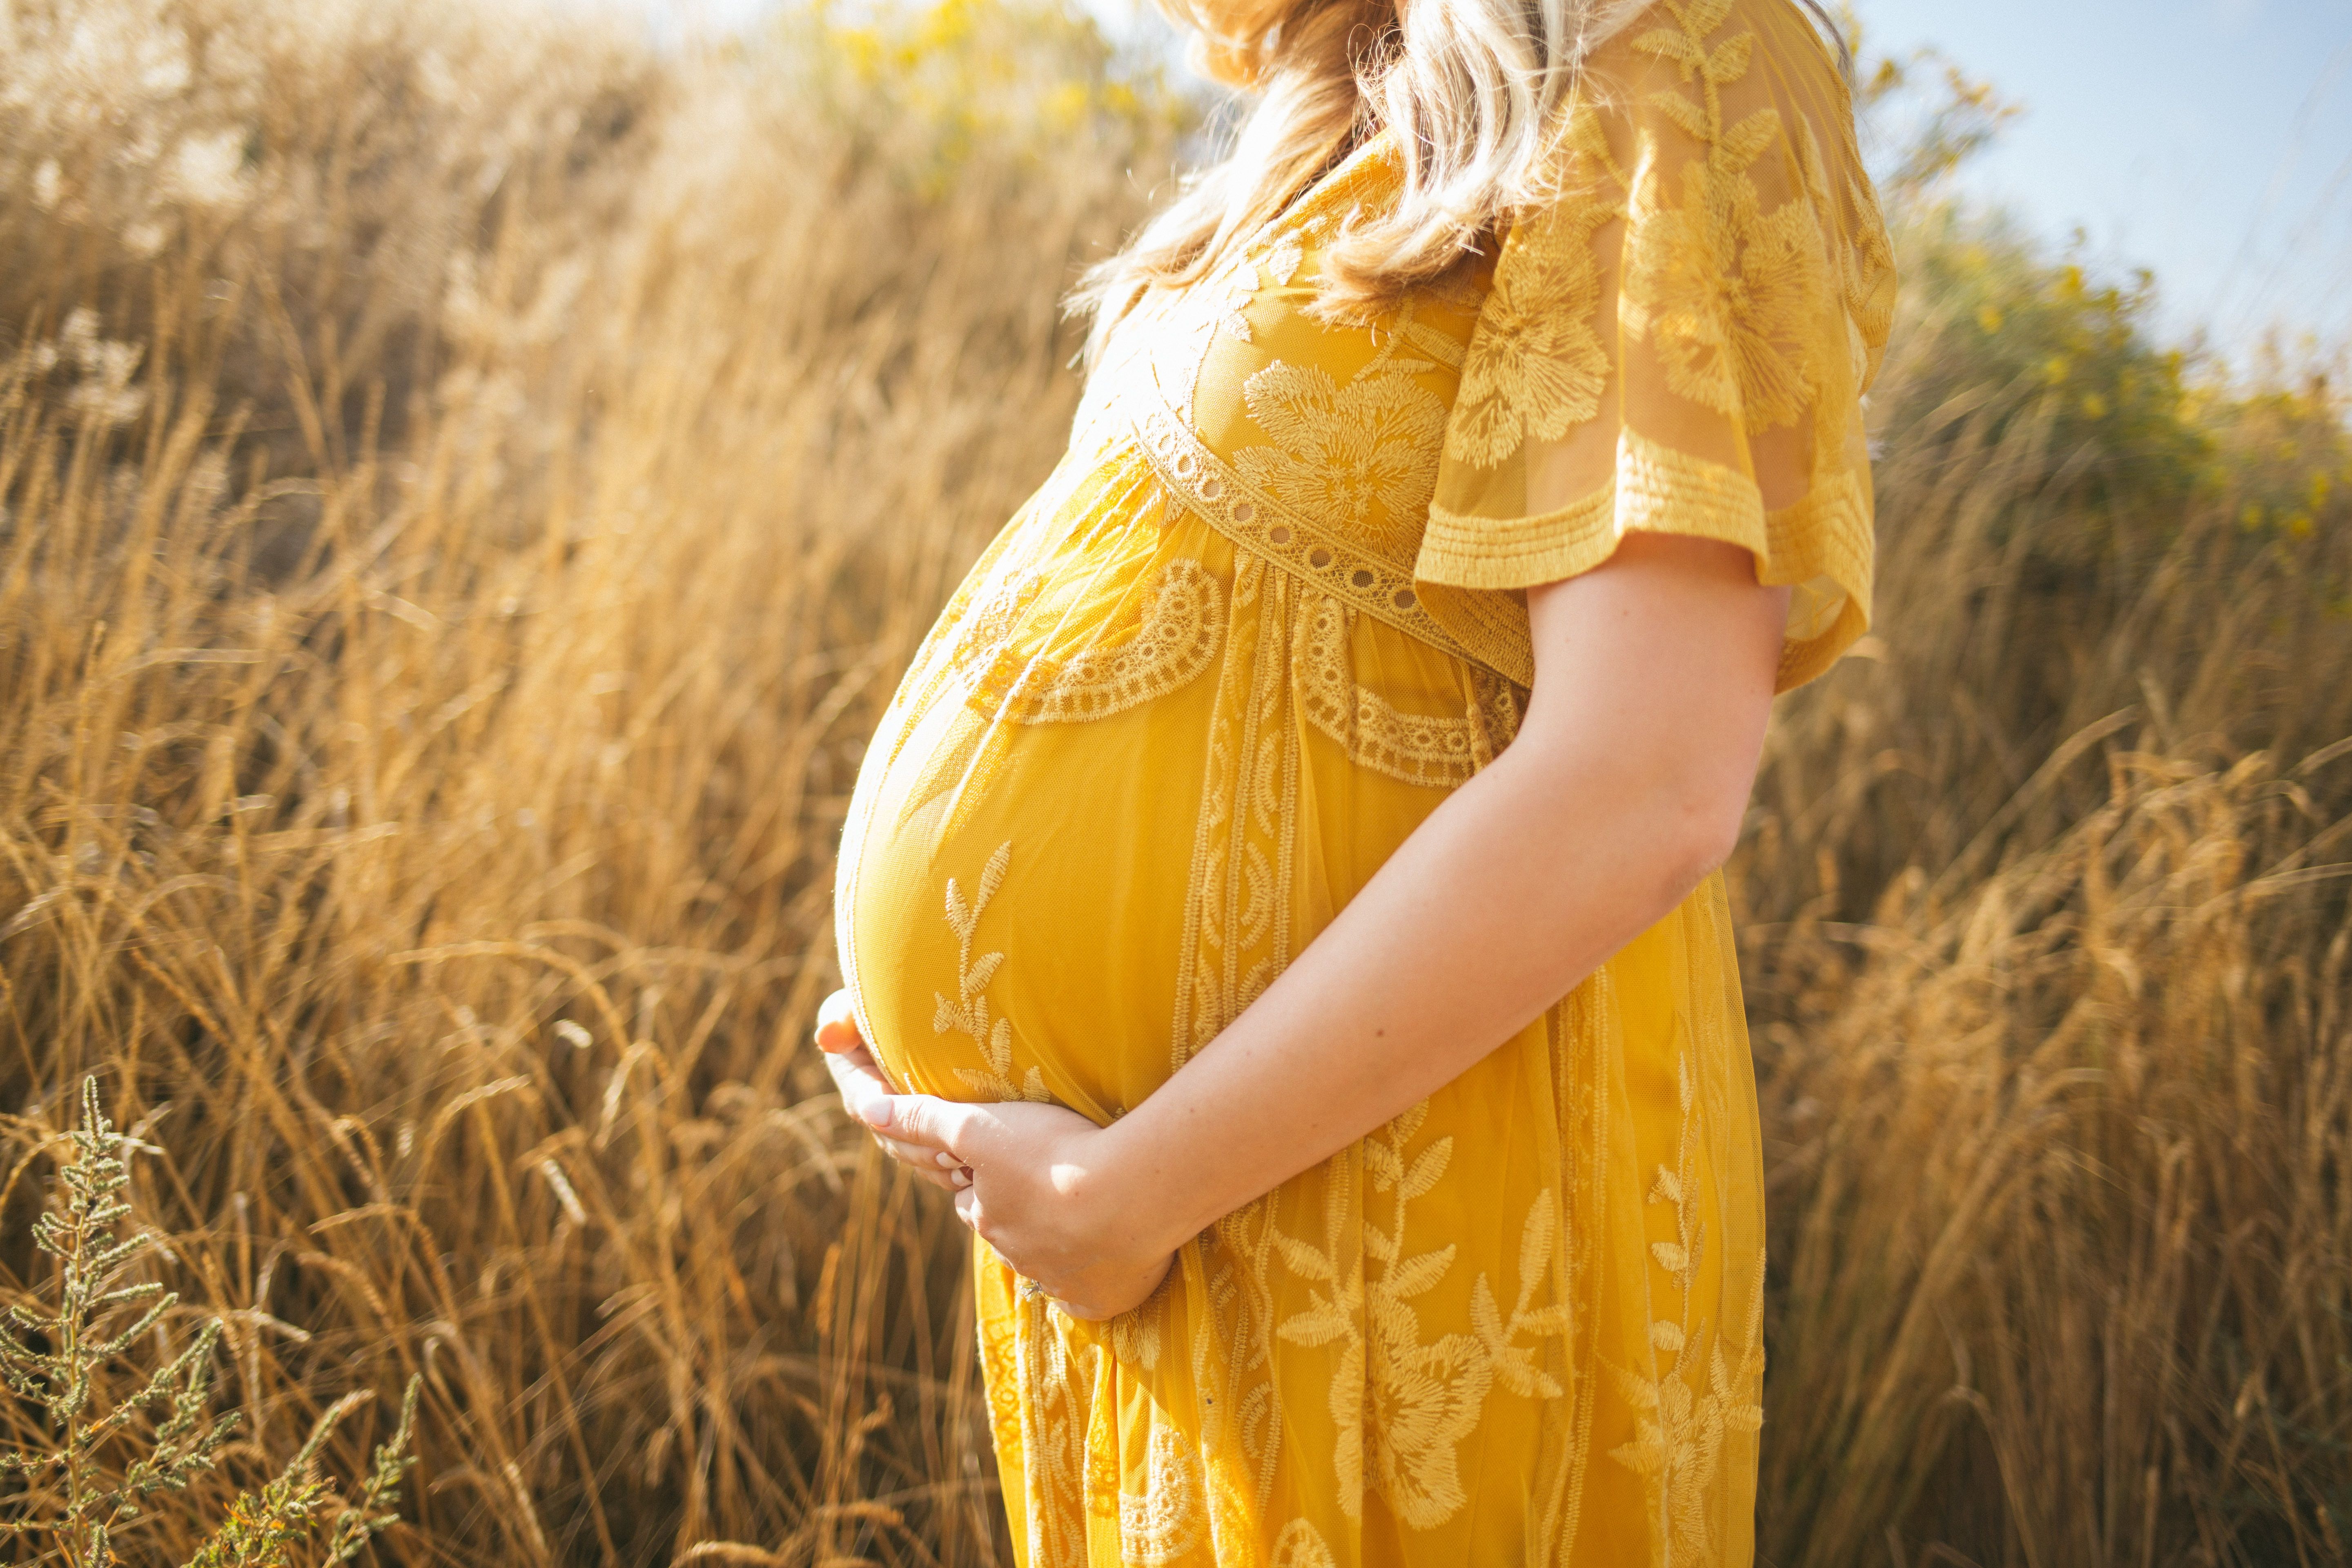 Cuure presenta su nuevo "Complejo Maternidad", el suplemento 100% natural que toda futura madre necesita